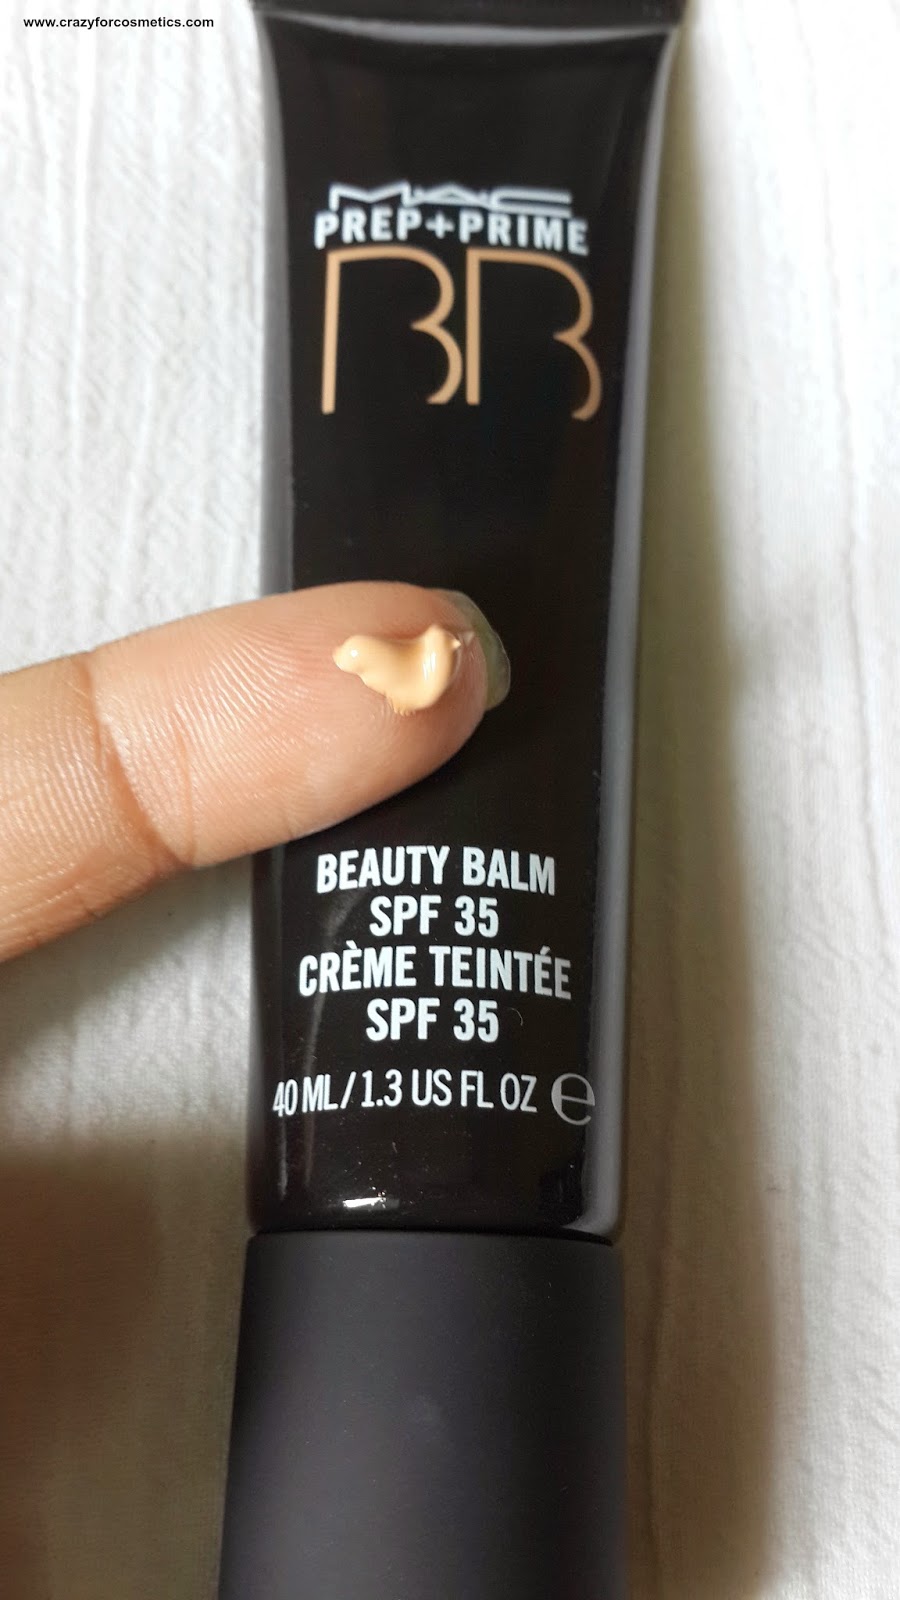 MAC’s Prep + Prime BB Beauty Balm SPF 35